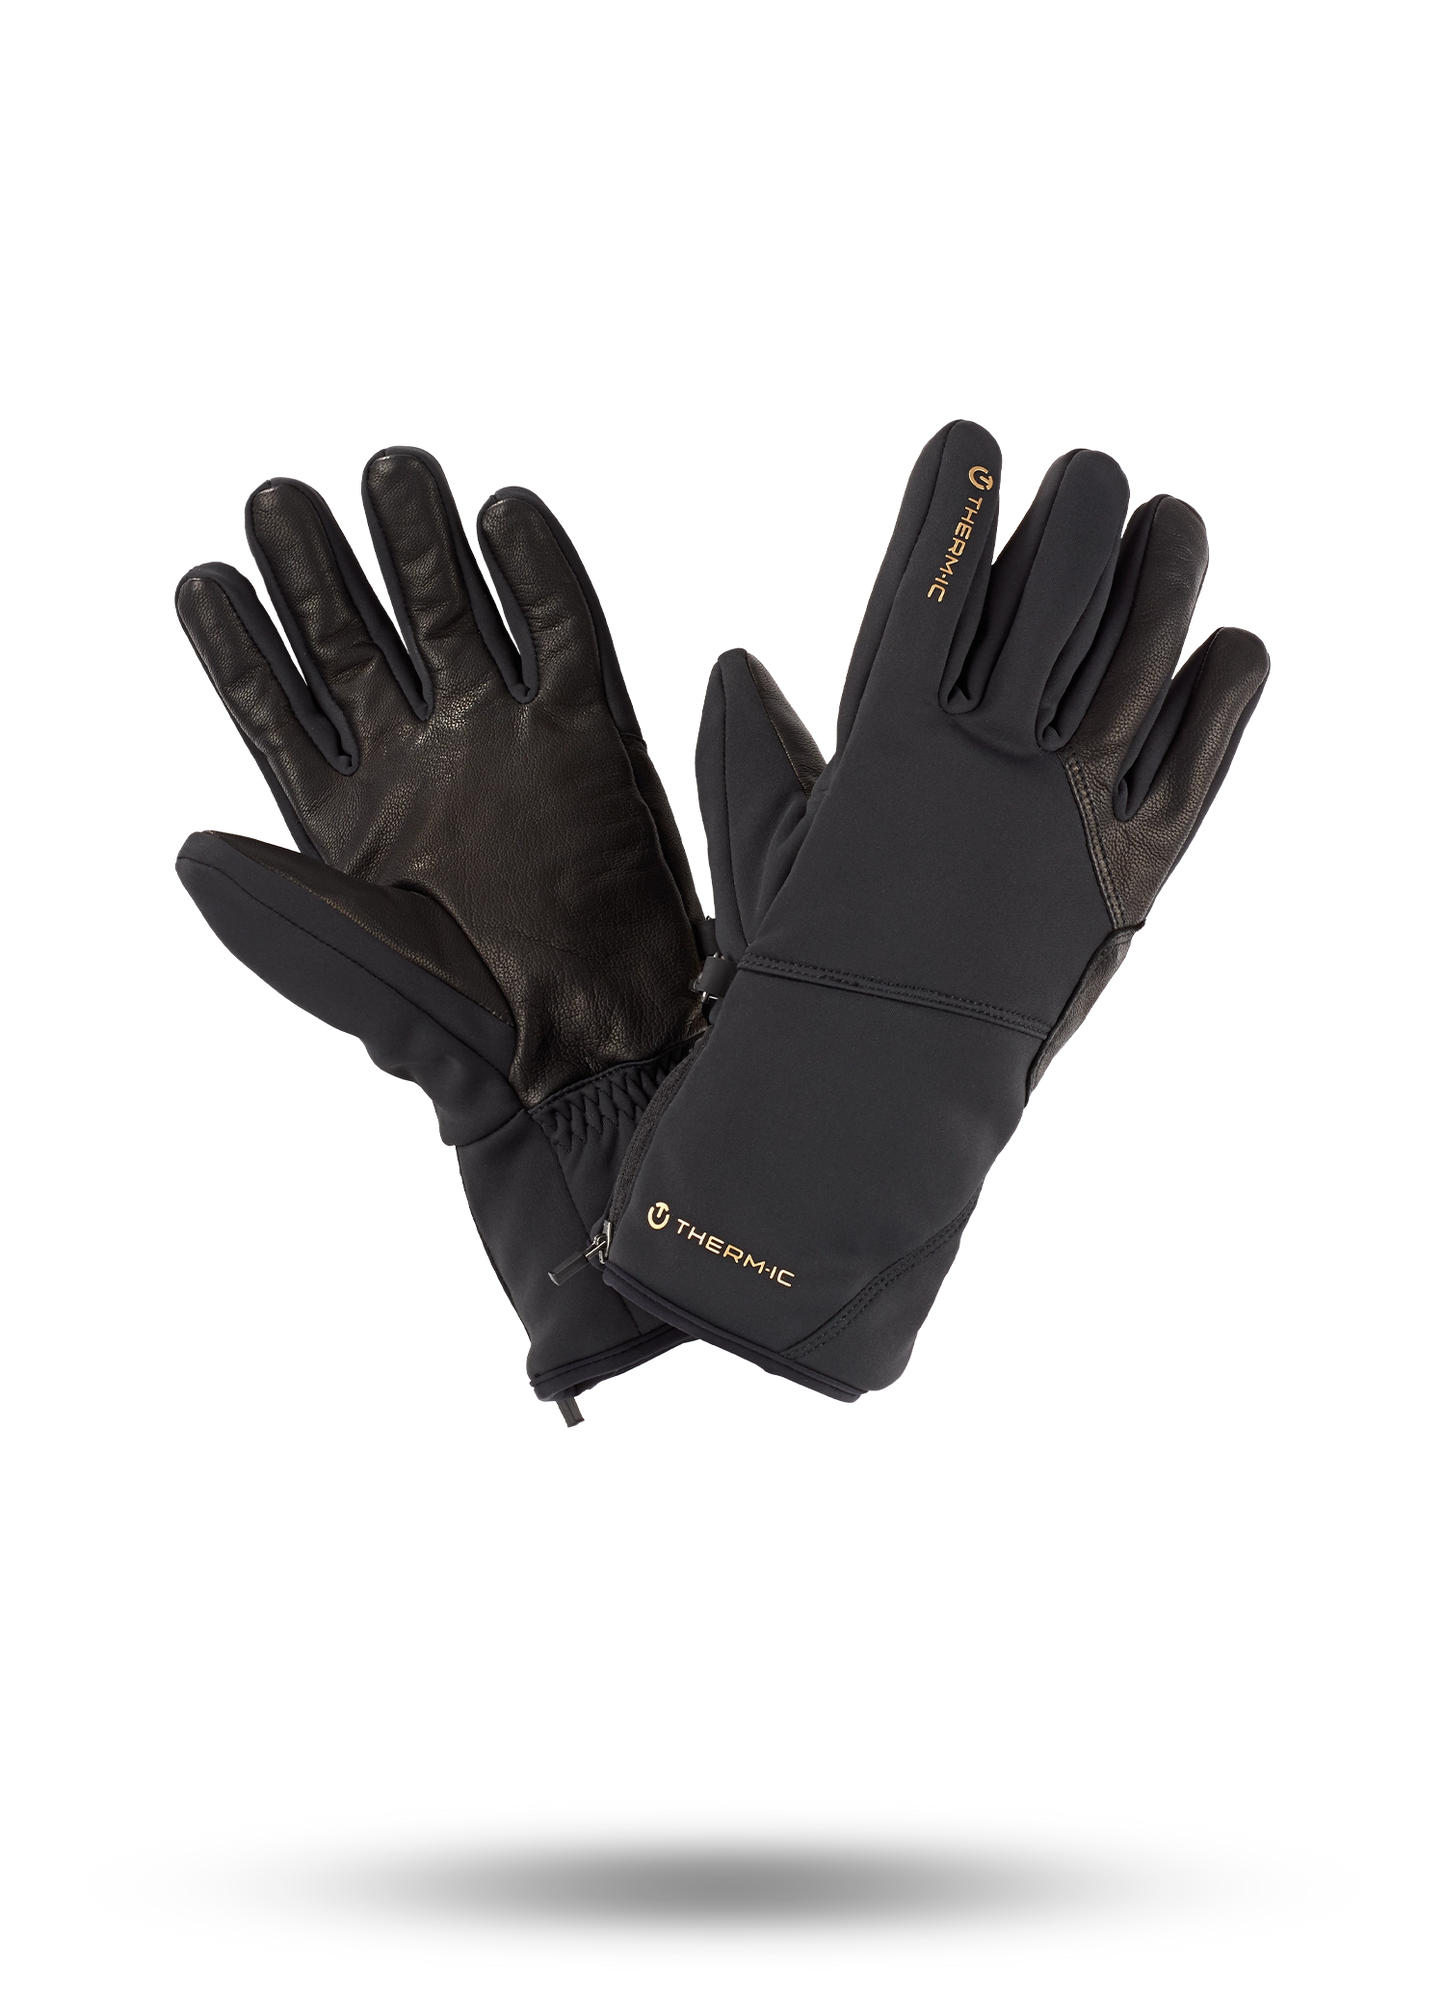 Thermic Ski Light Gloves